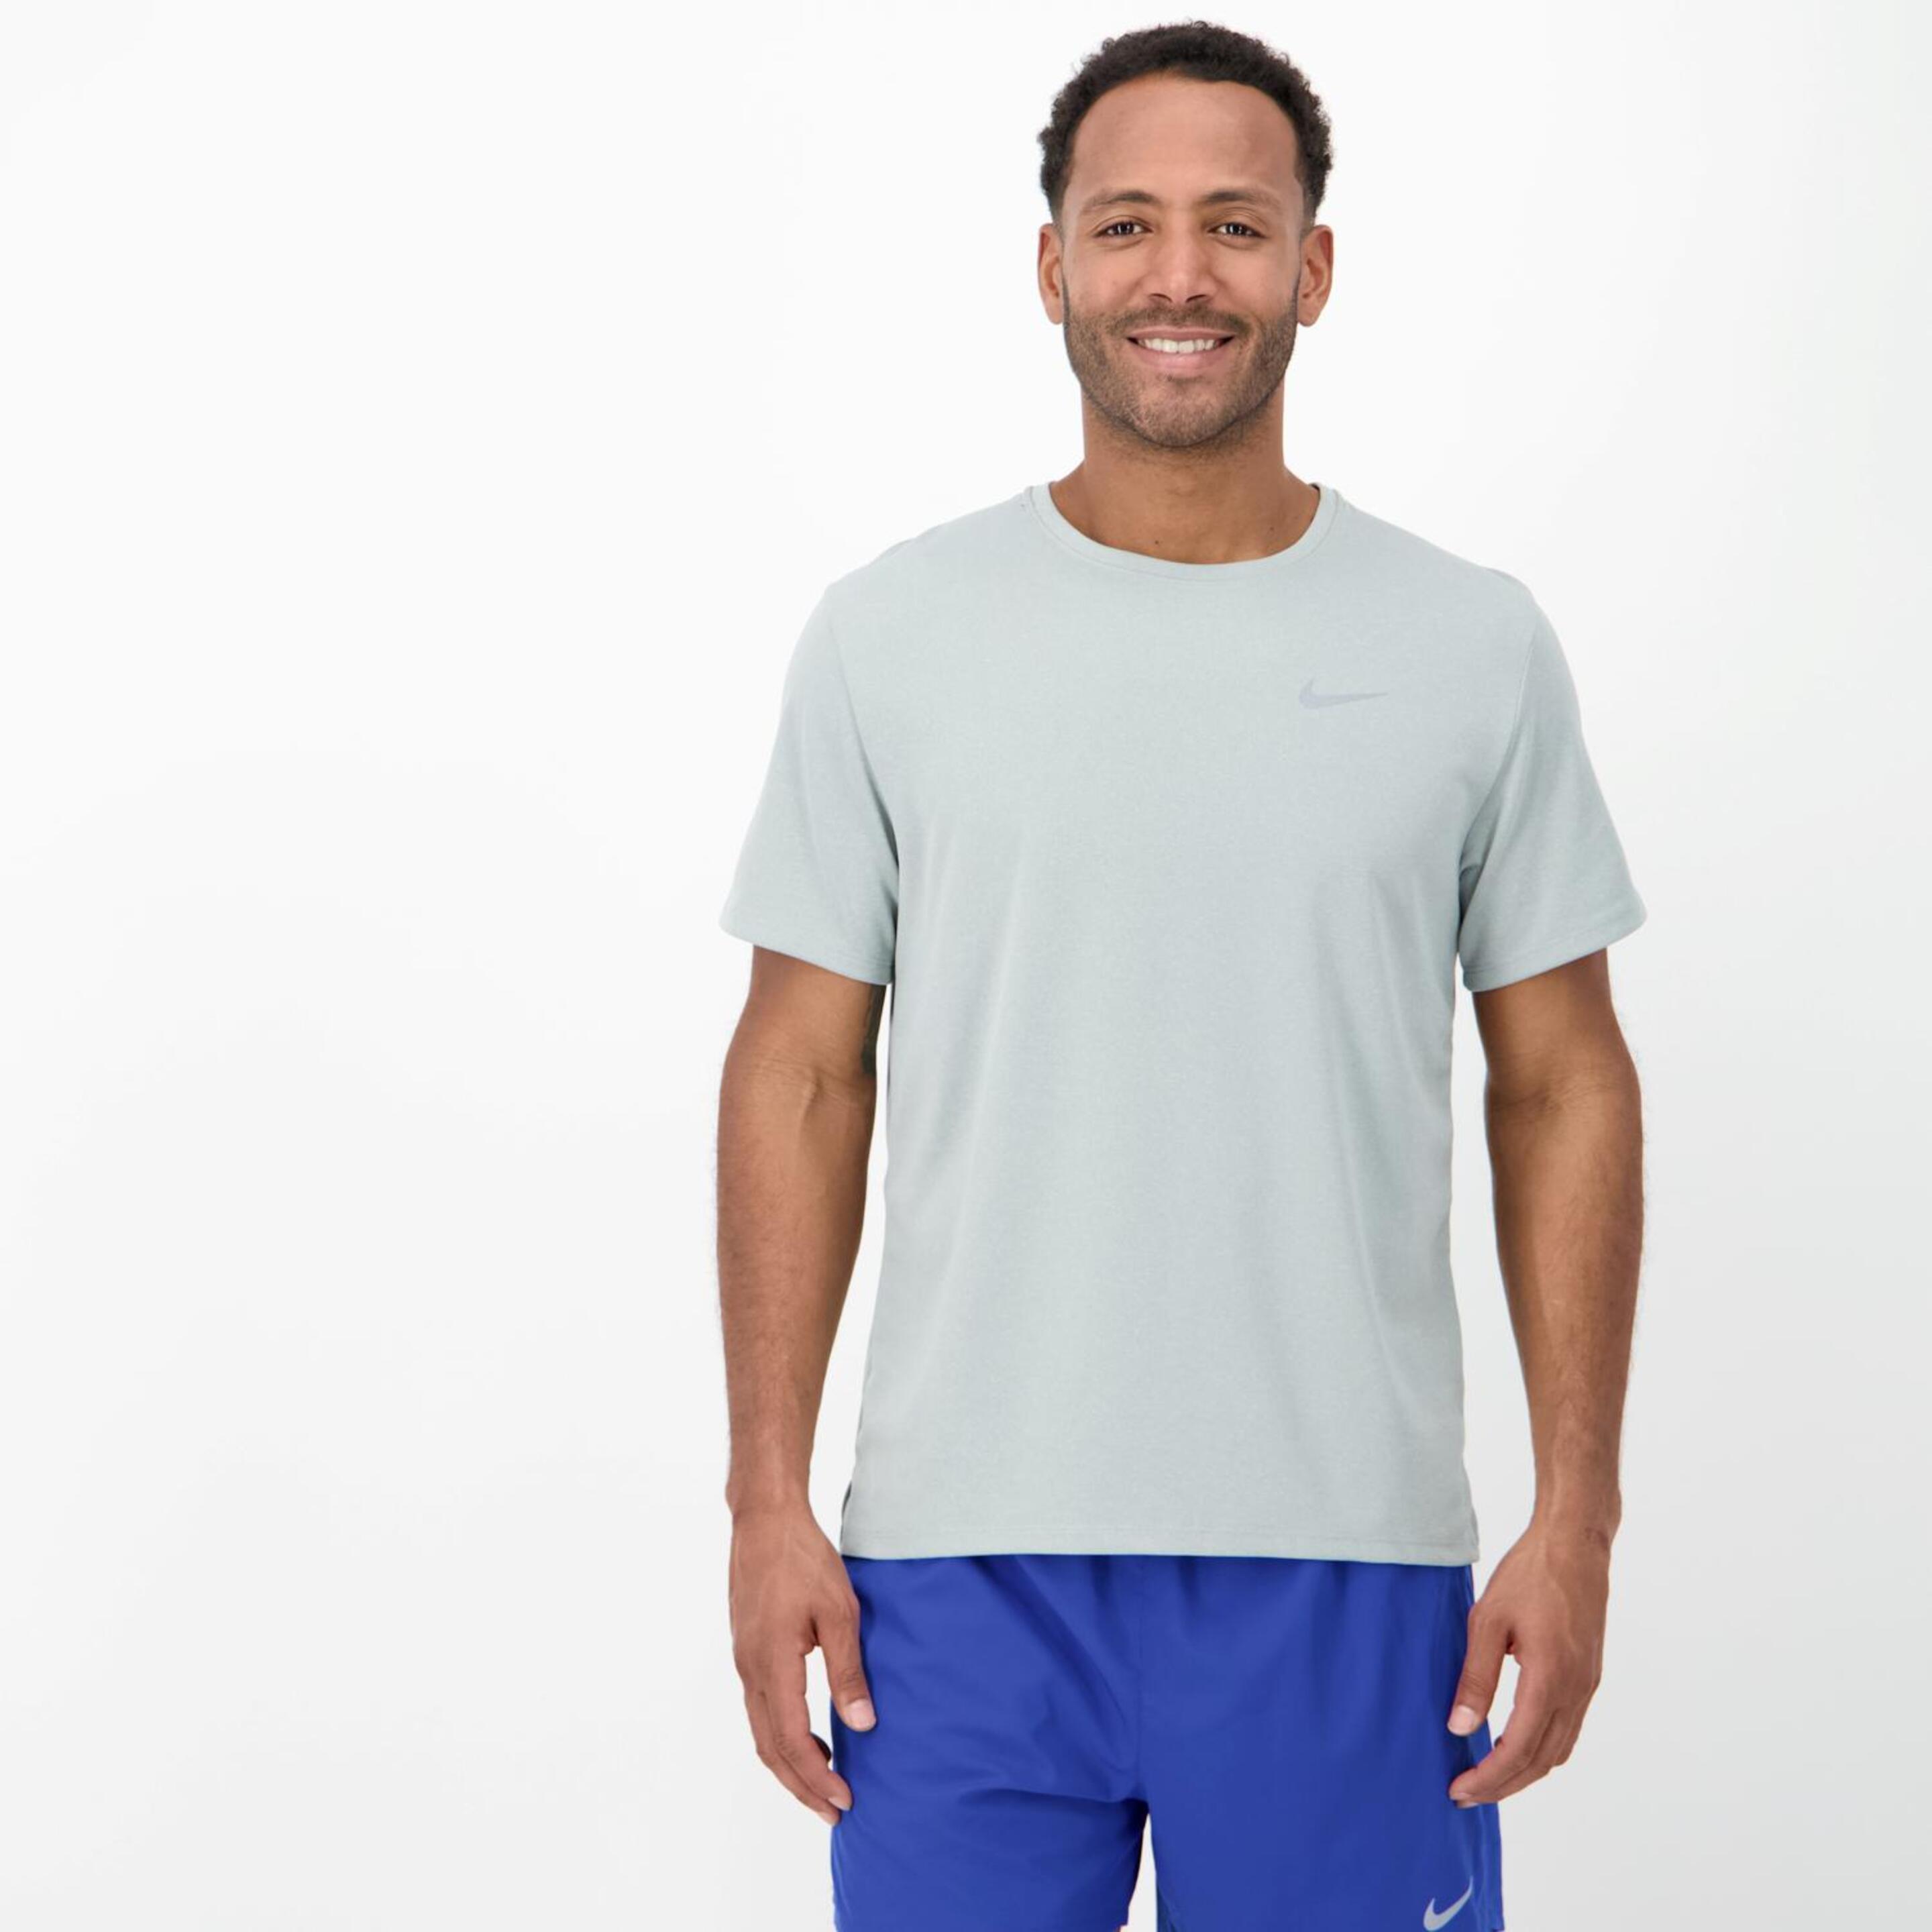 Camiseta Nike - gris - Camiseta Running Hombre